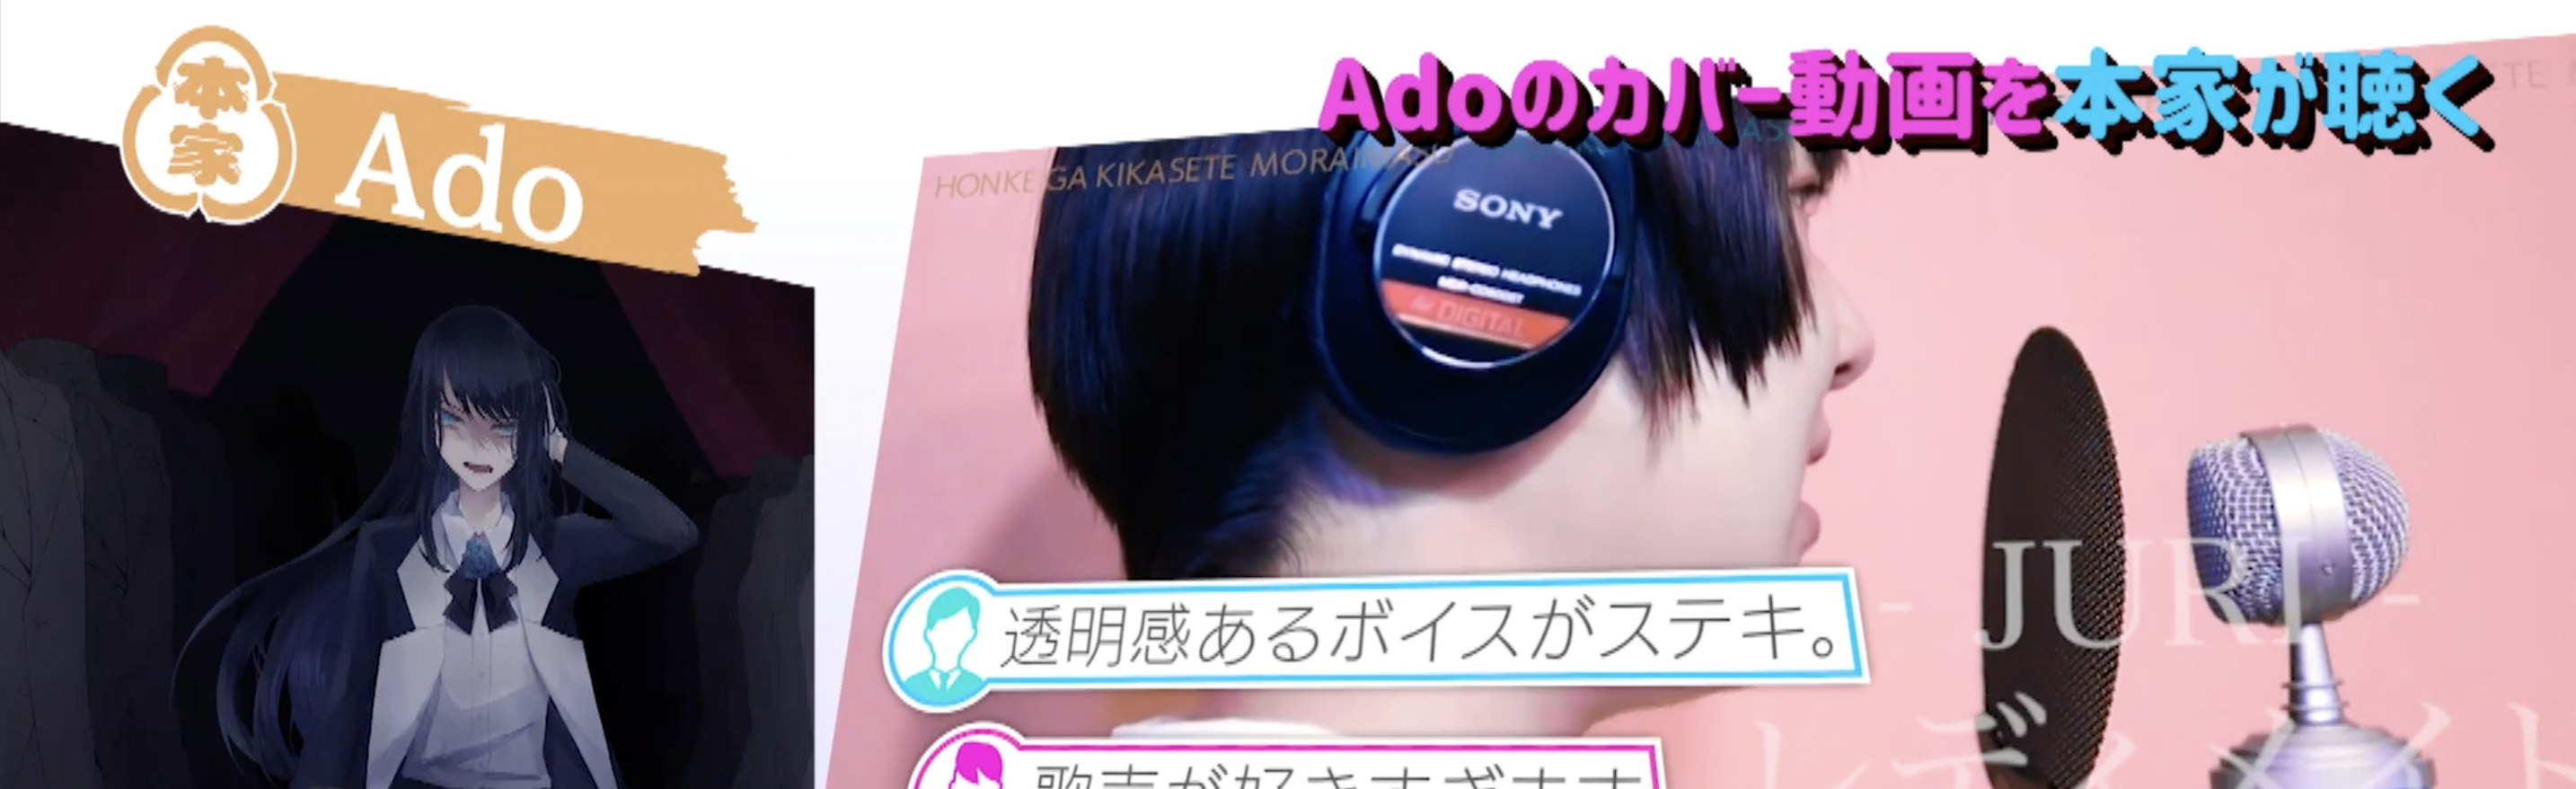 女性歌手Adoの名曲カバー動画がテレビ東京で放映されました！